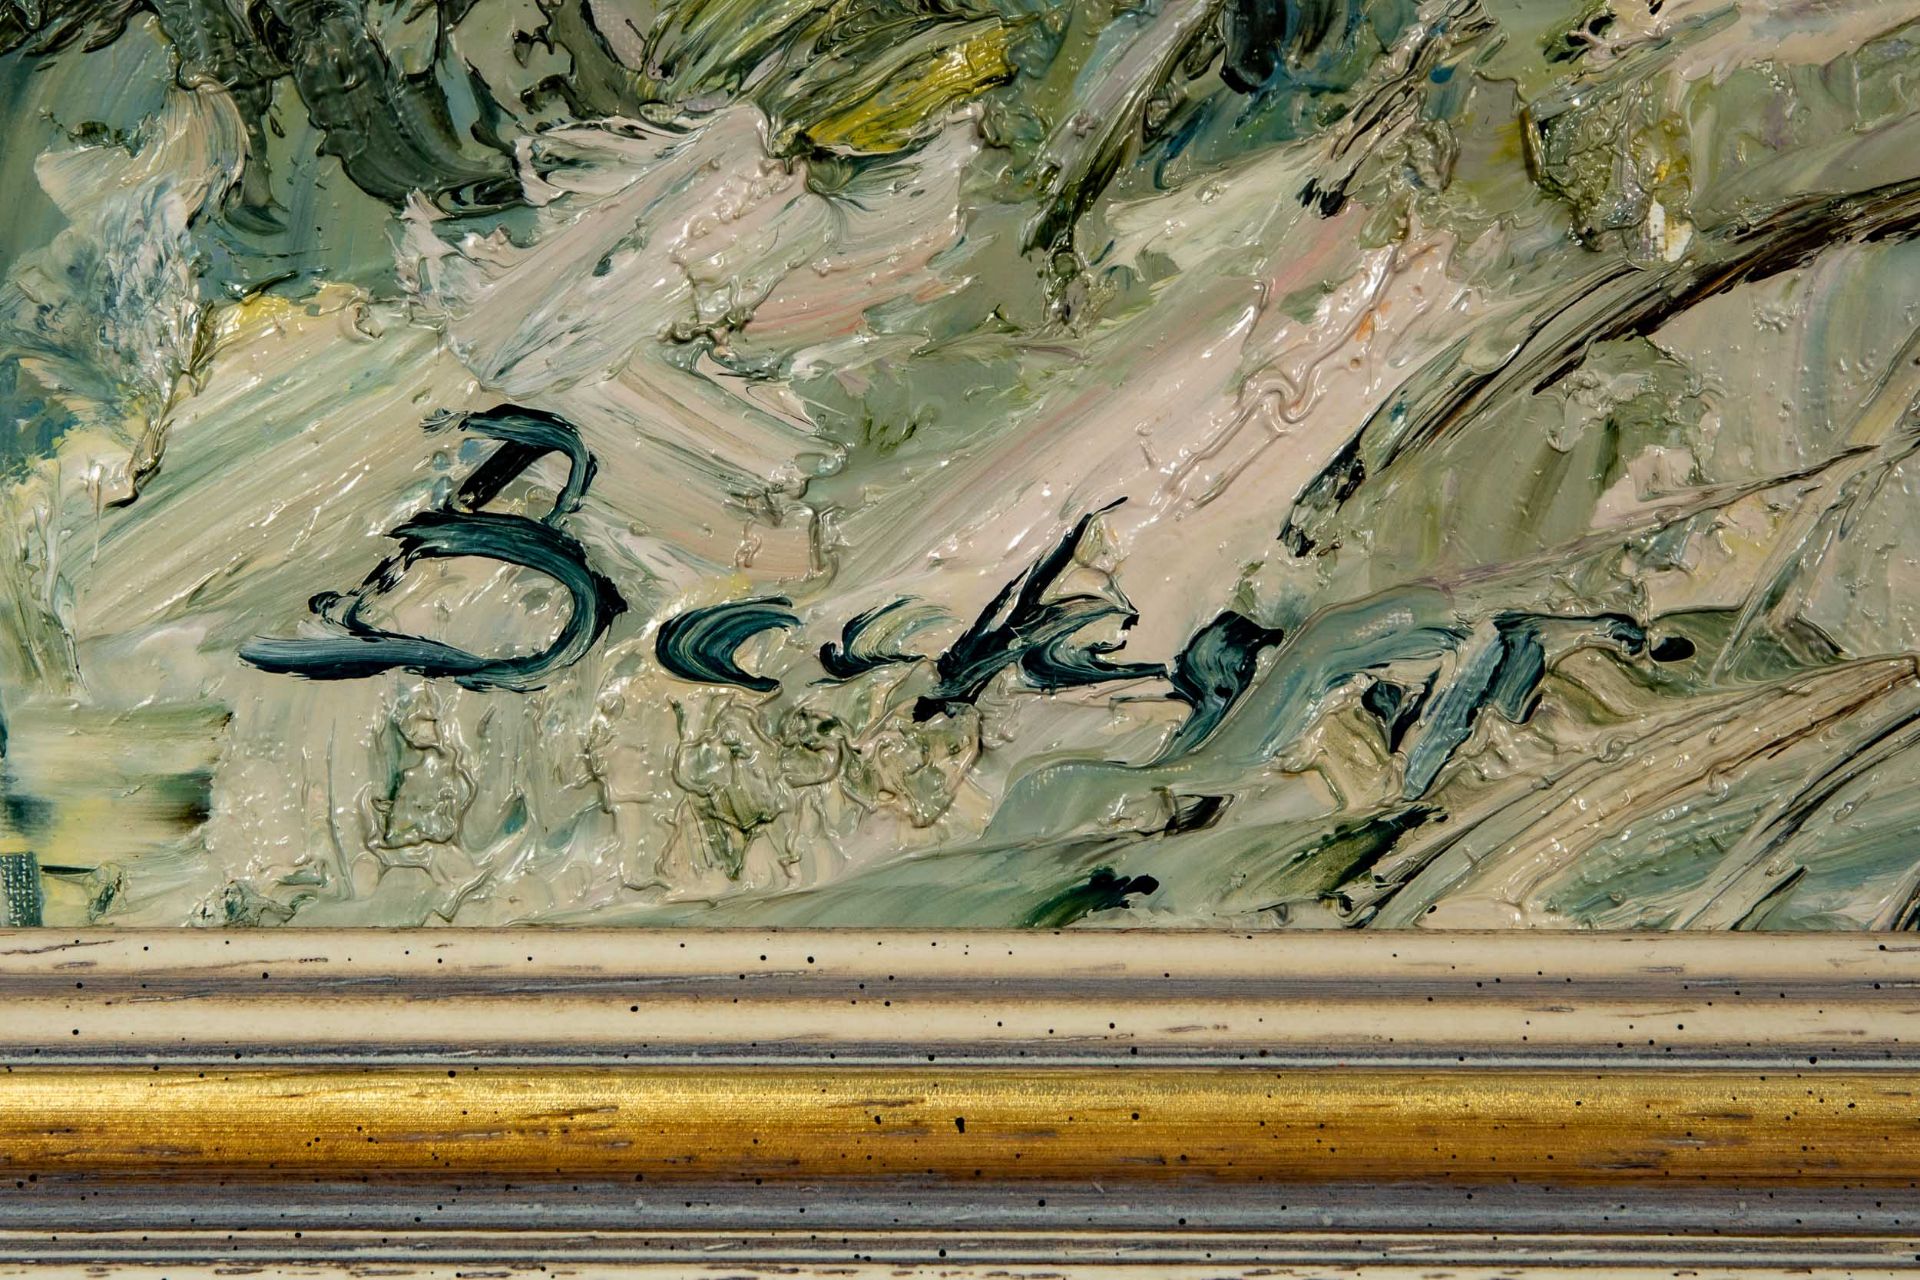 "Blick in die Ferne". Gemälde Öl auf Leinwand, ca. 70 x 80 cm, unten links signiert: "Becker", akad - Bild 9 aus 9